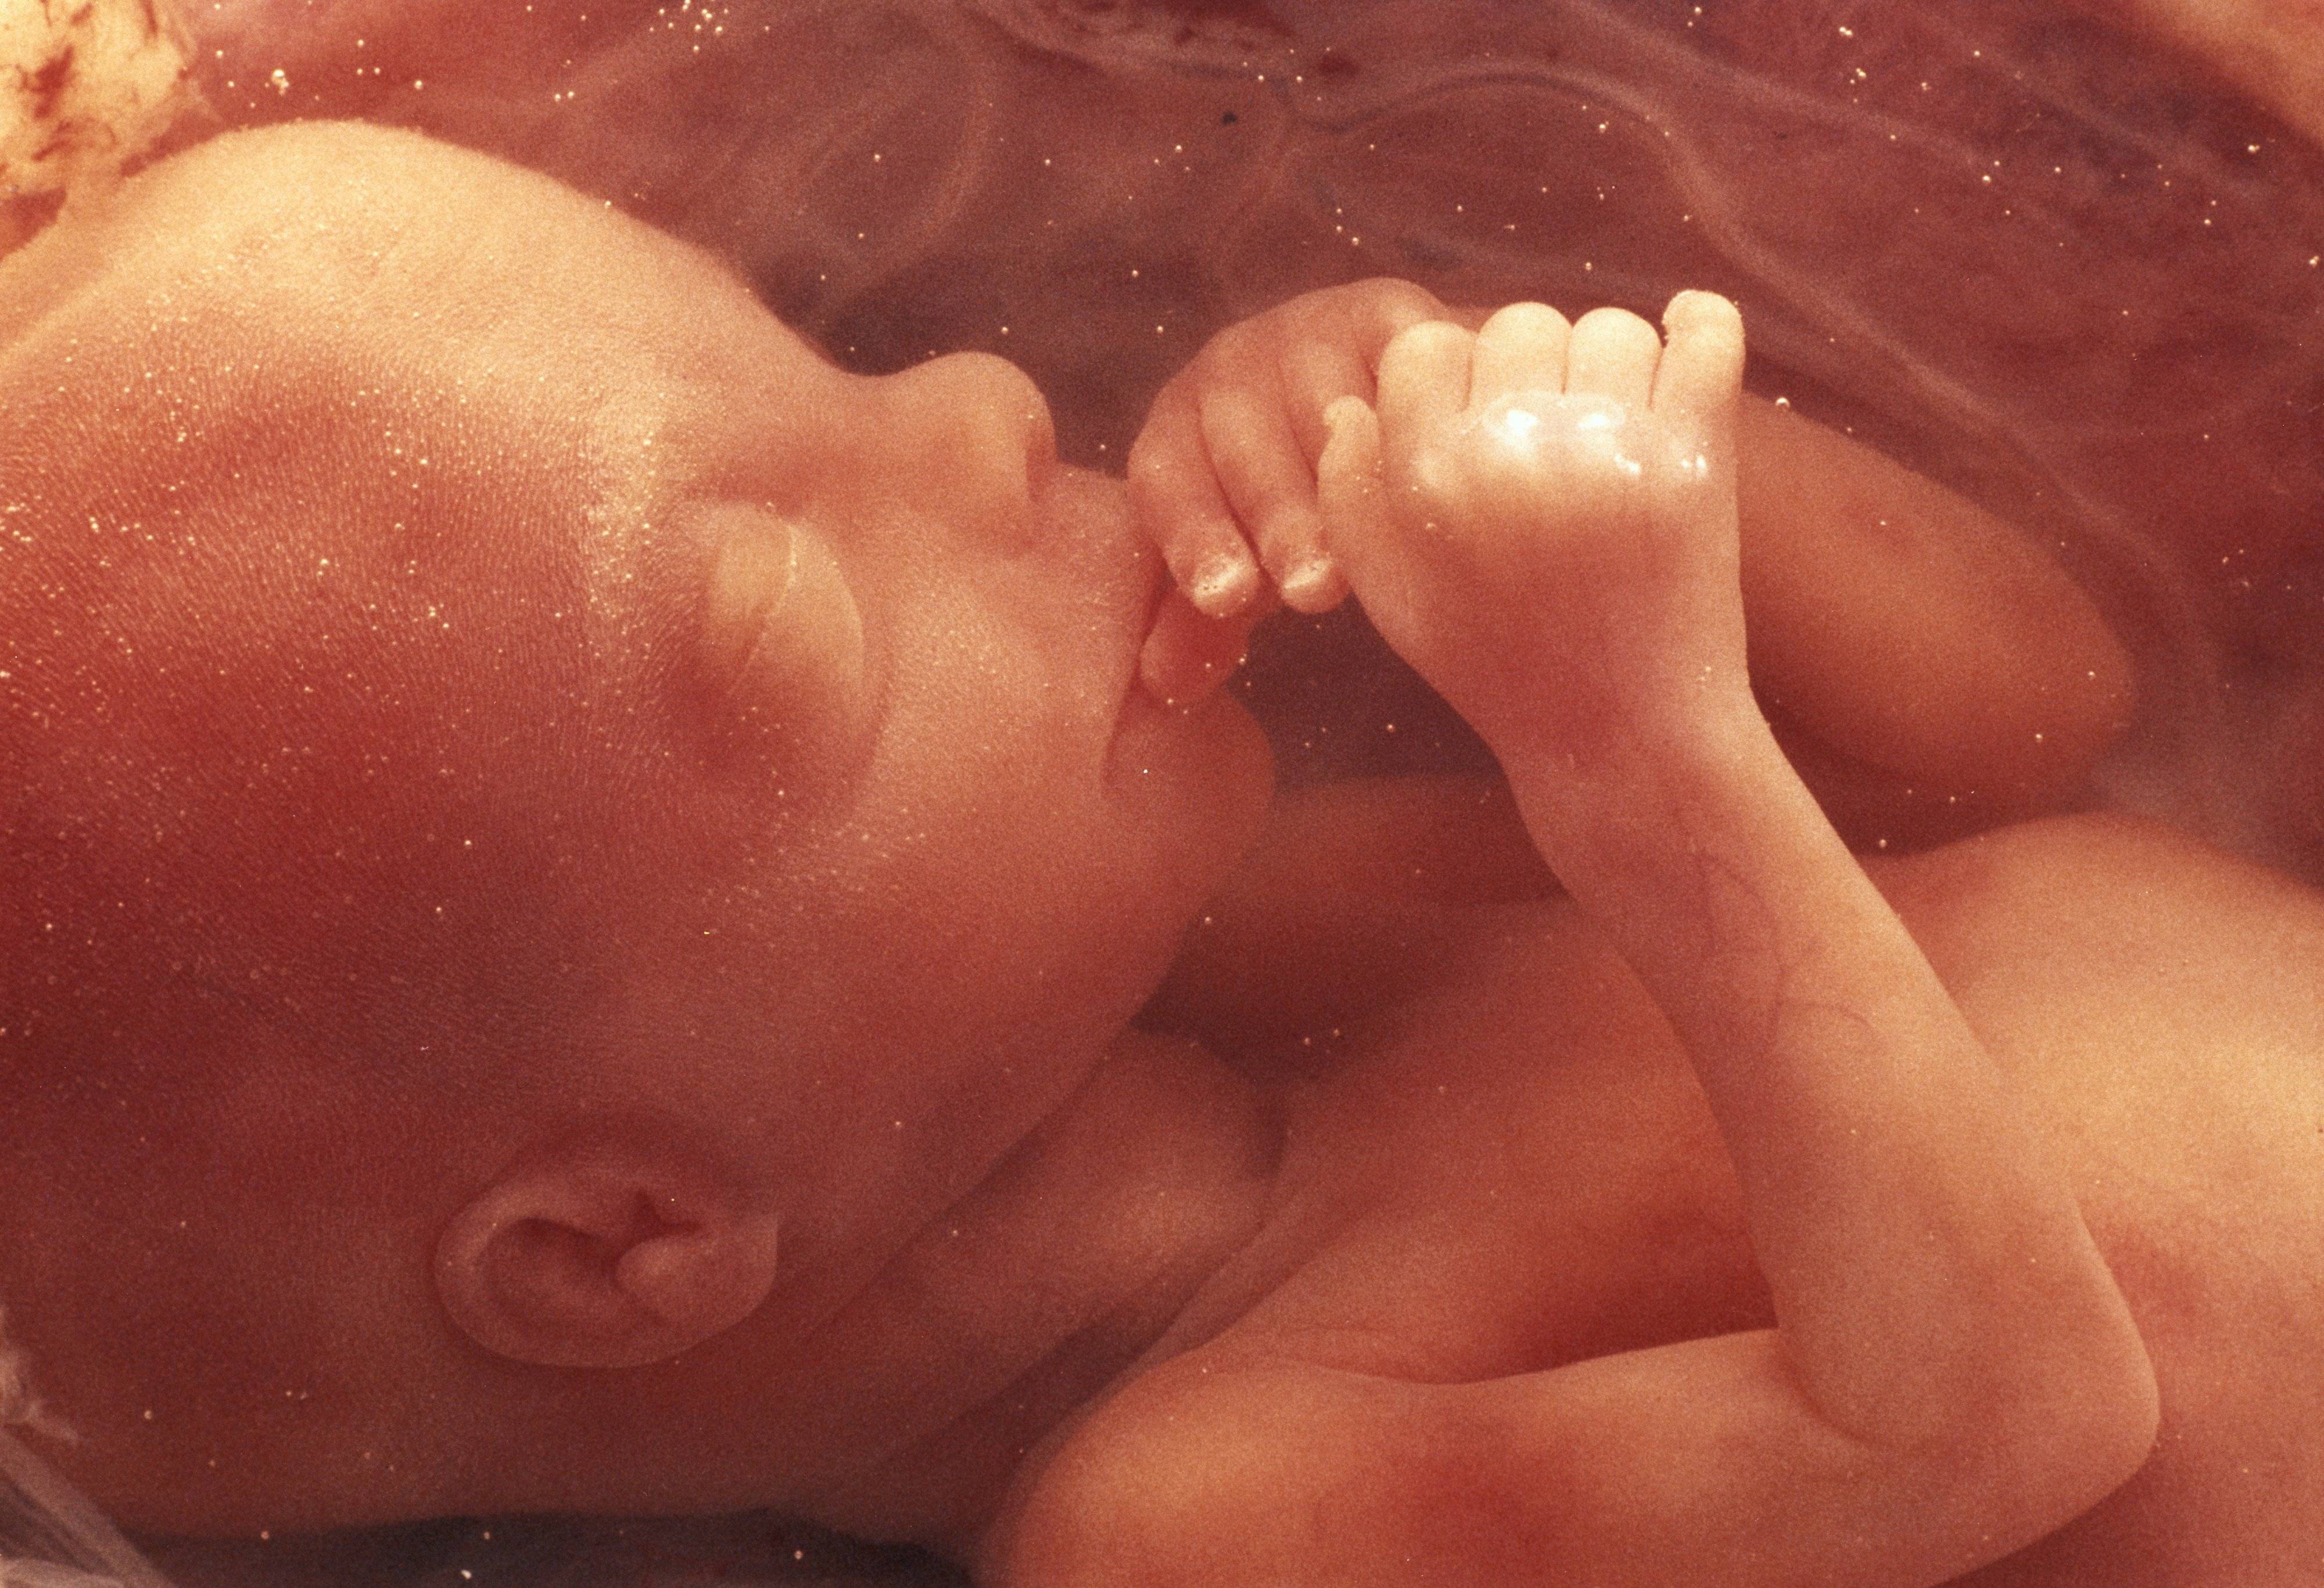 12 неделя беременности: что происходит с малышом и мамой, фото, развитие плода